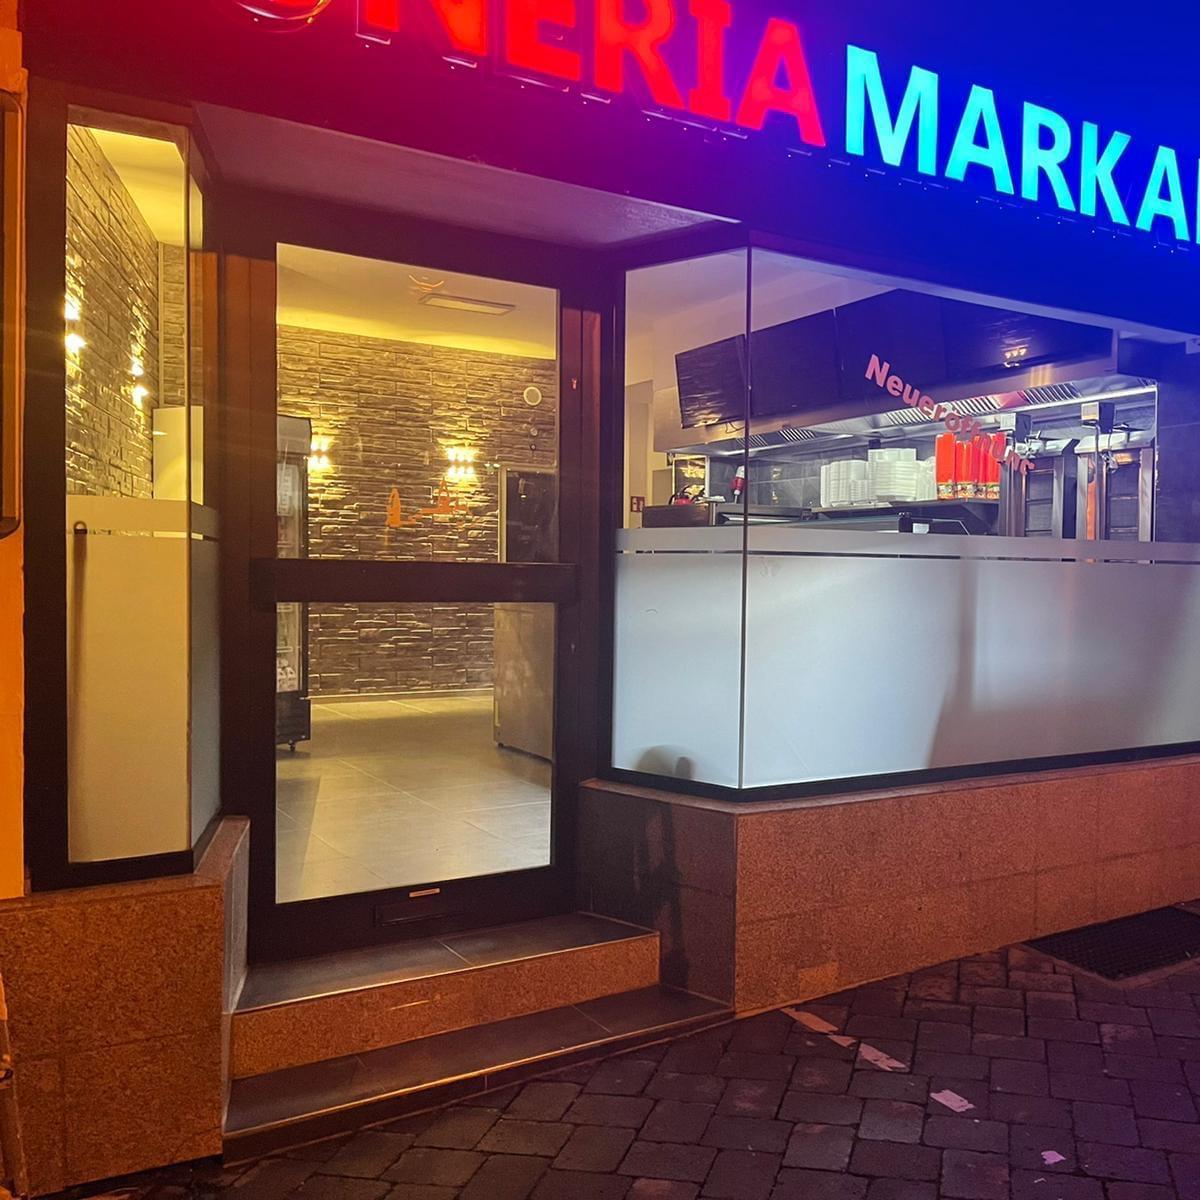 Restaurant "Döneria Markaner" in Altena